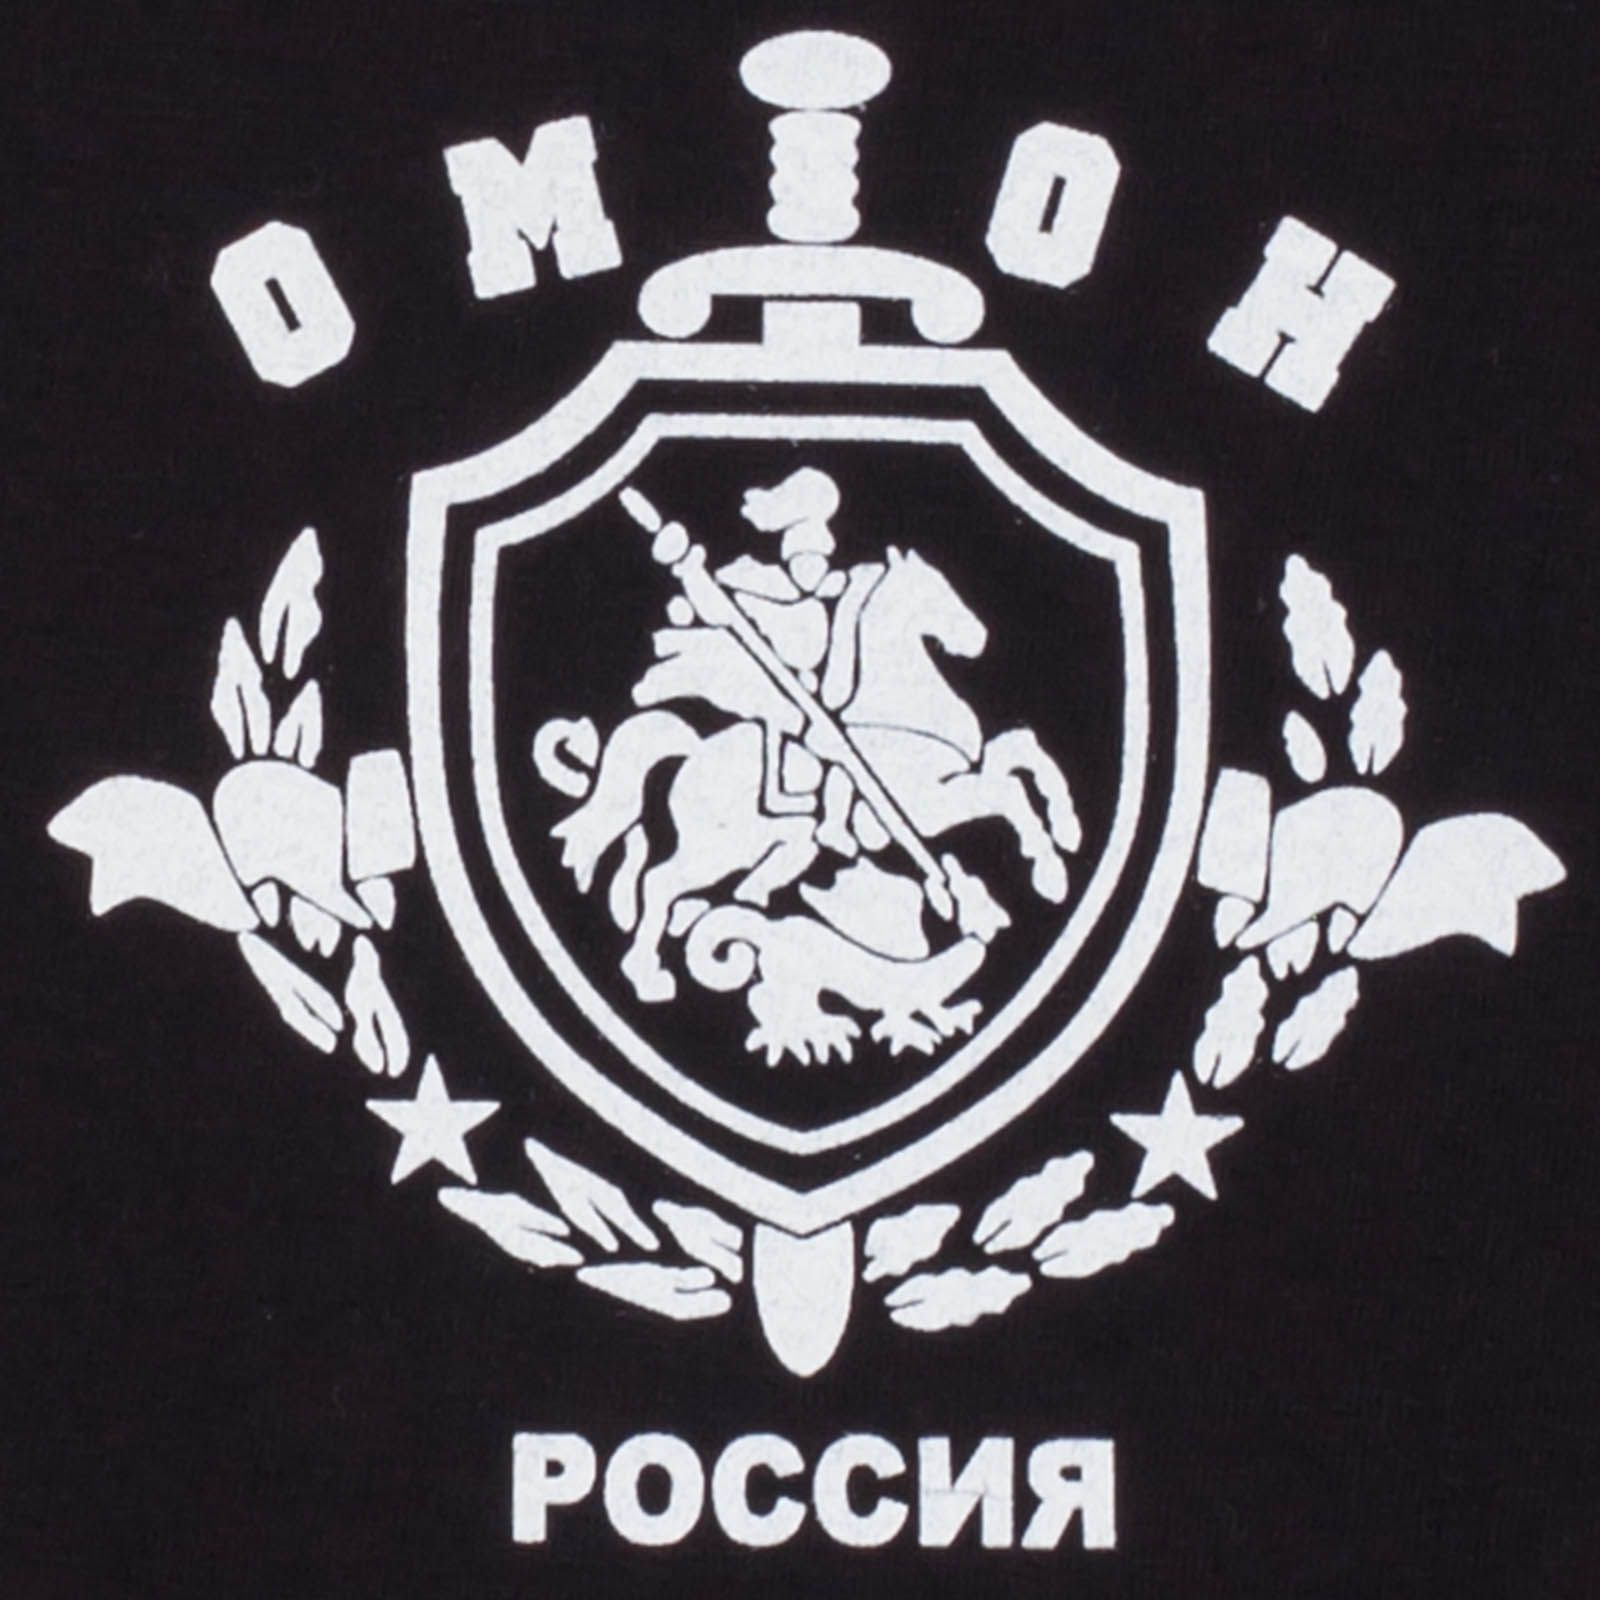 Футболка Отряда Полиции Особого Назначения «ОМОН» 